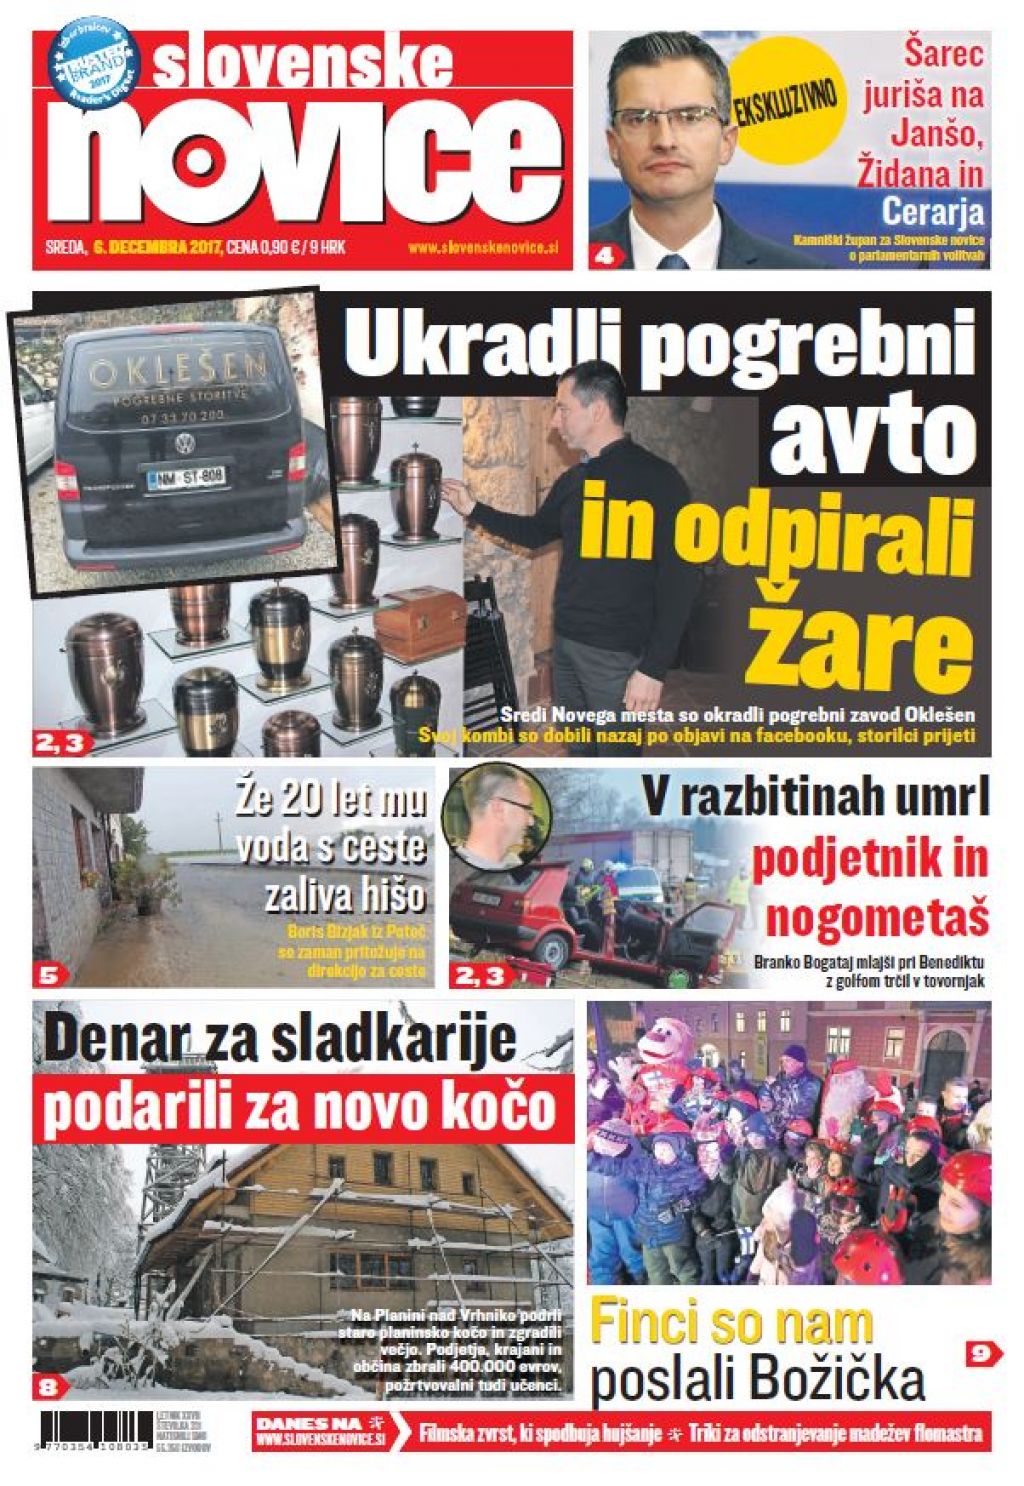 V tiskani izdaji sredinih Slovenskih novic preberite: Šarec juriša na Janšo, Židana in Cerarja